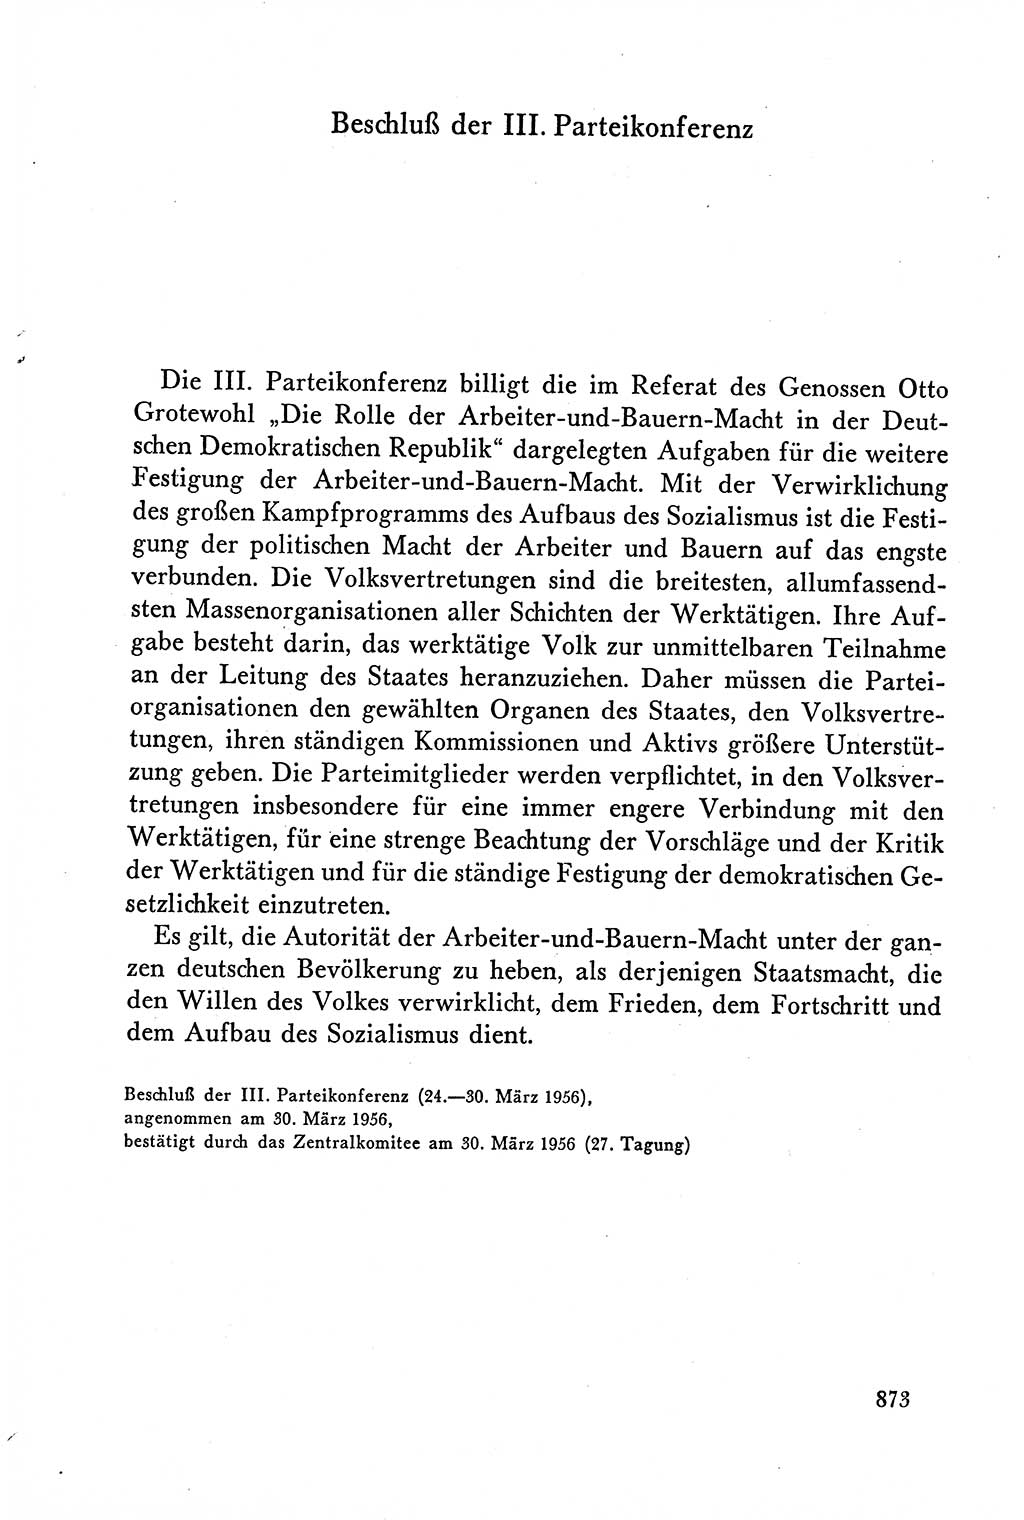 Dokumente der Sozialistischen Einheitspartei Deutschlands (SED) [Deutsche Demokratische Republik (DDR)] 1958-1959, Seite 873 (Dok. SED DDR 1958-1959, S. 873)